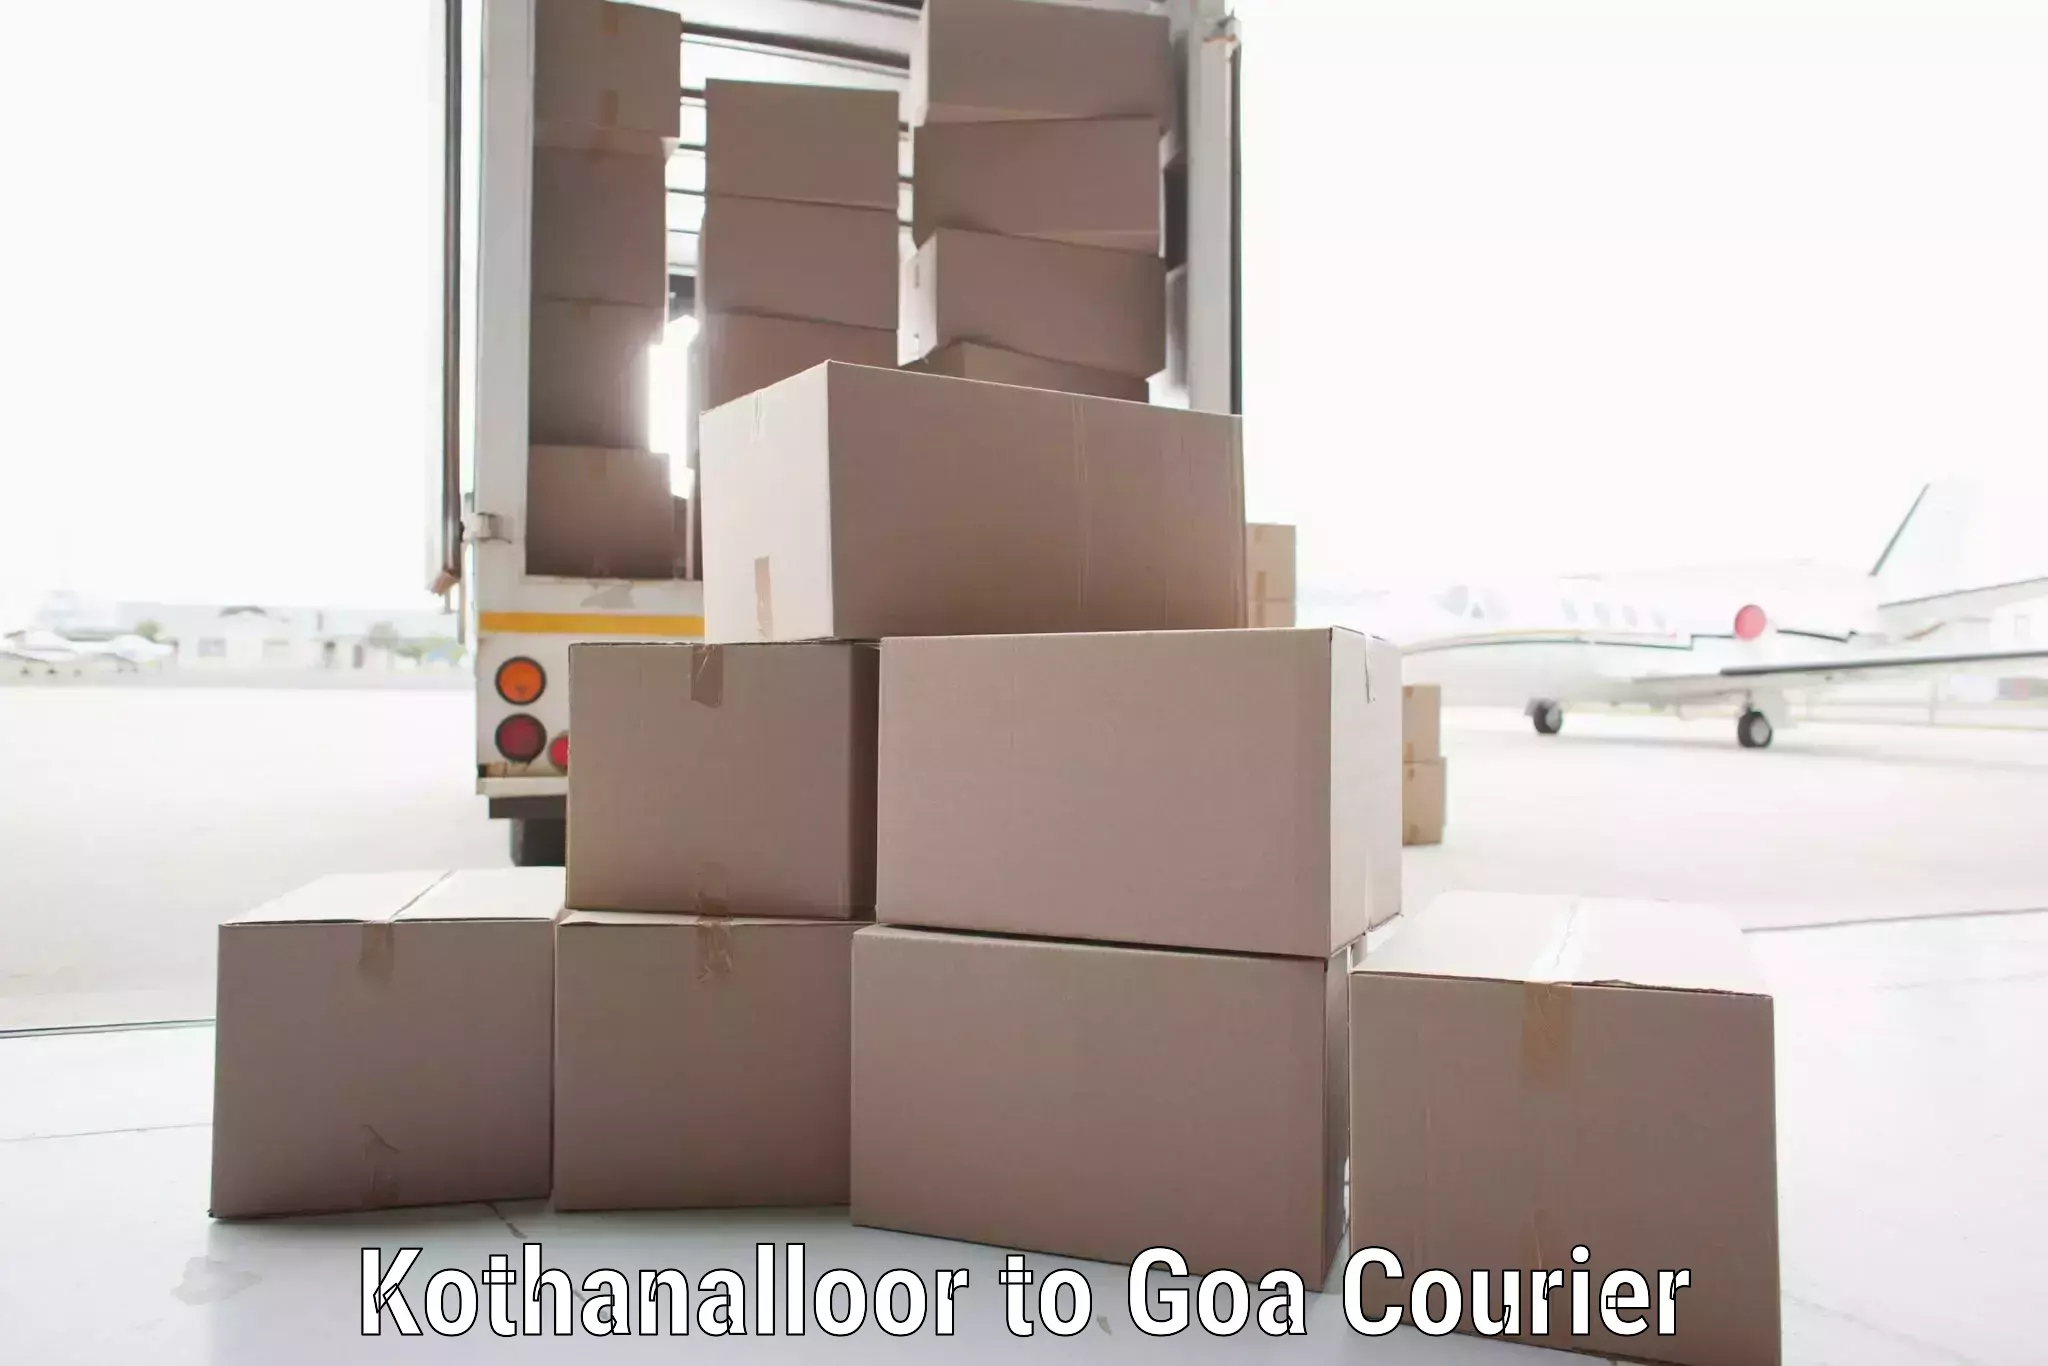 International logistics in Kothanalloor to IIT Goa